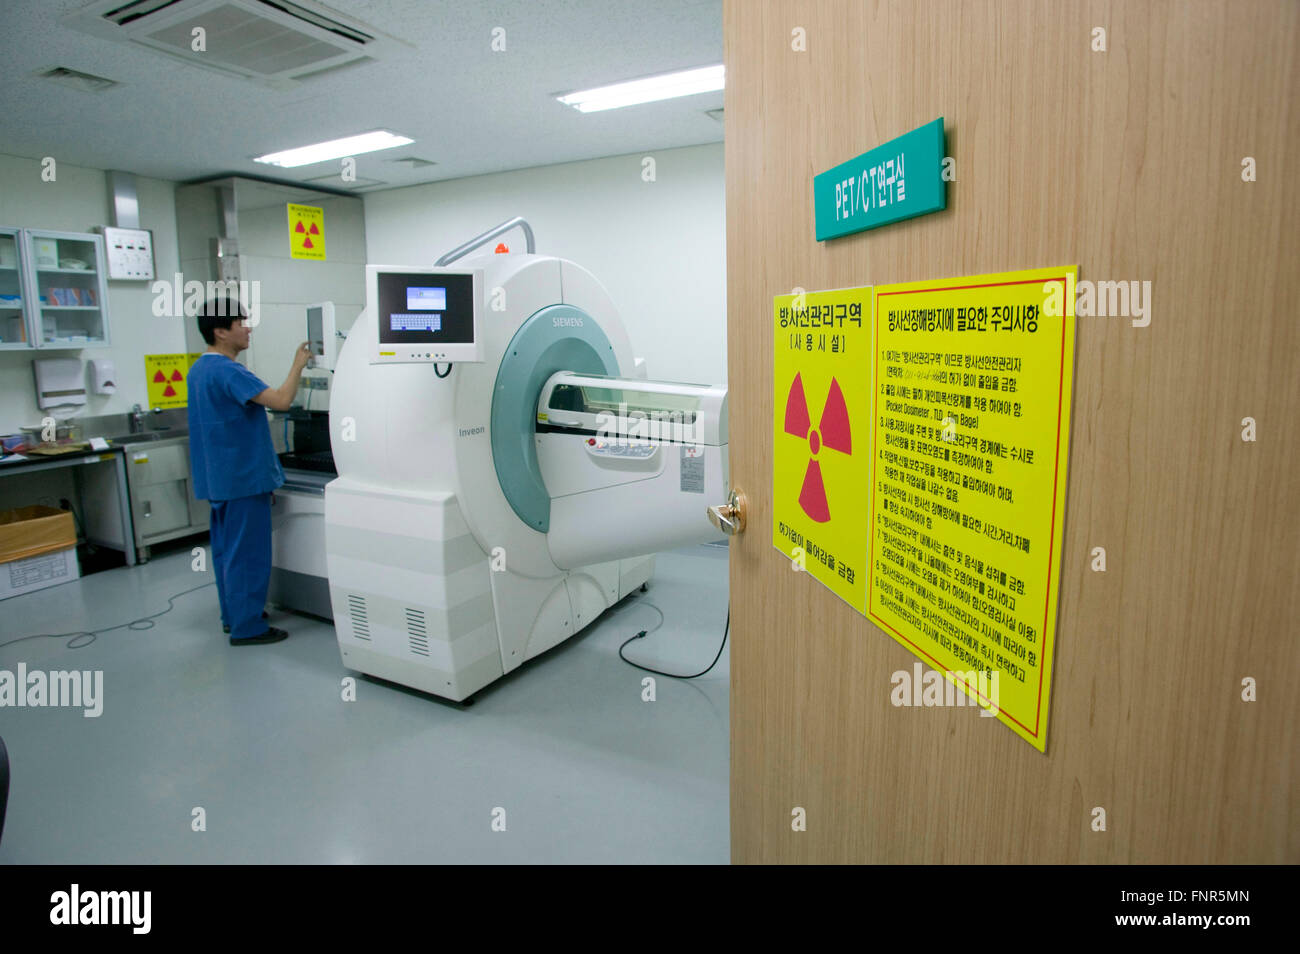 L'entrée d'une salle de recherche en imagerie médicale au Samsung Medical Center, Seoul. Banque D'Images